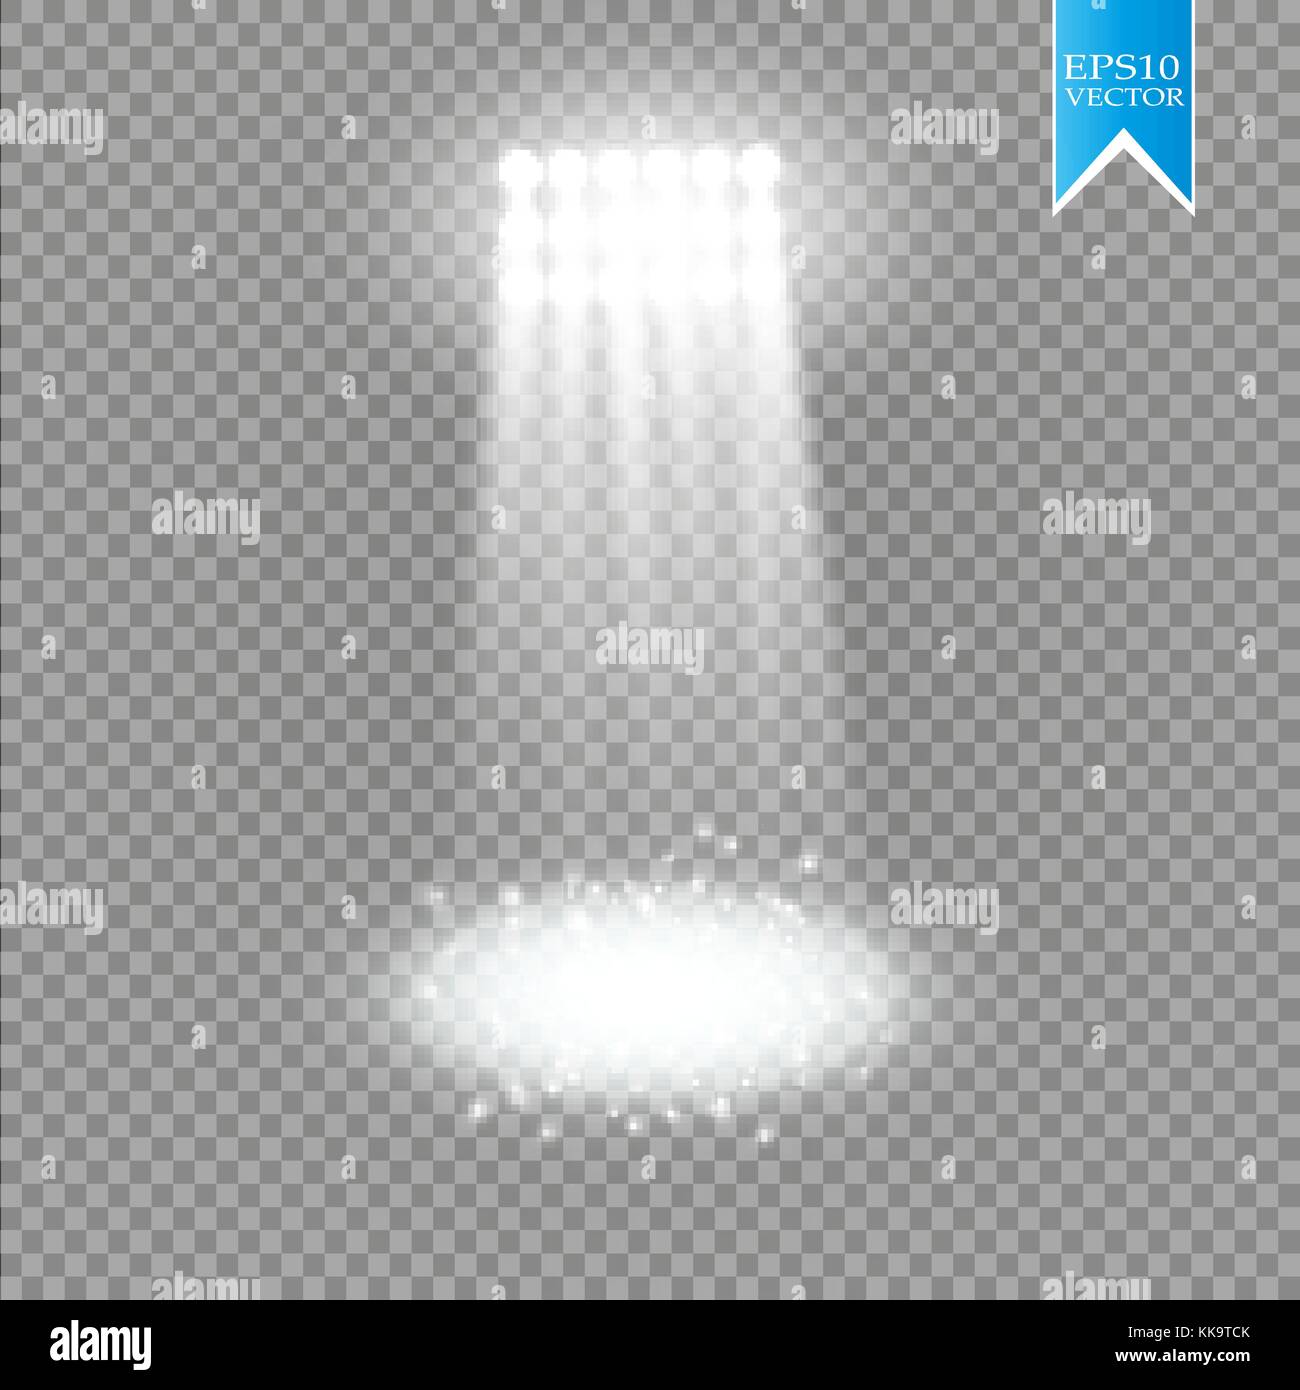 Weiß Vektor spotlight Lichteffekt auf transparenten Hintergrund. Konzert Szene mit Funken von Glow ray beleuchtet. Stadion Projektor. Show room Stock Vektor